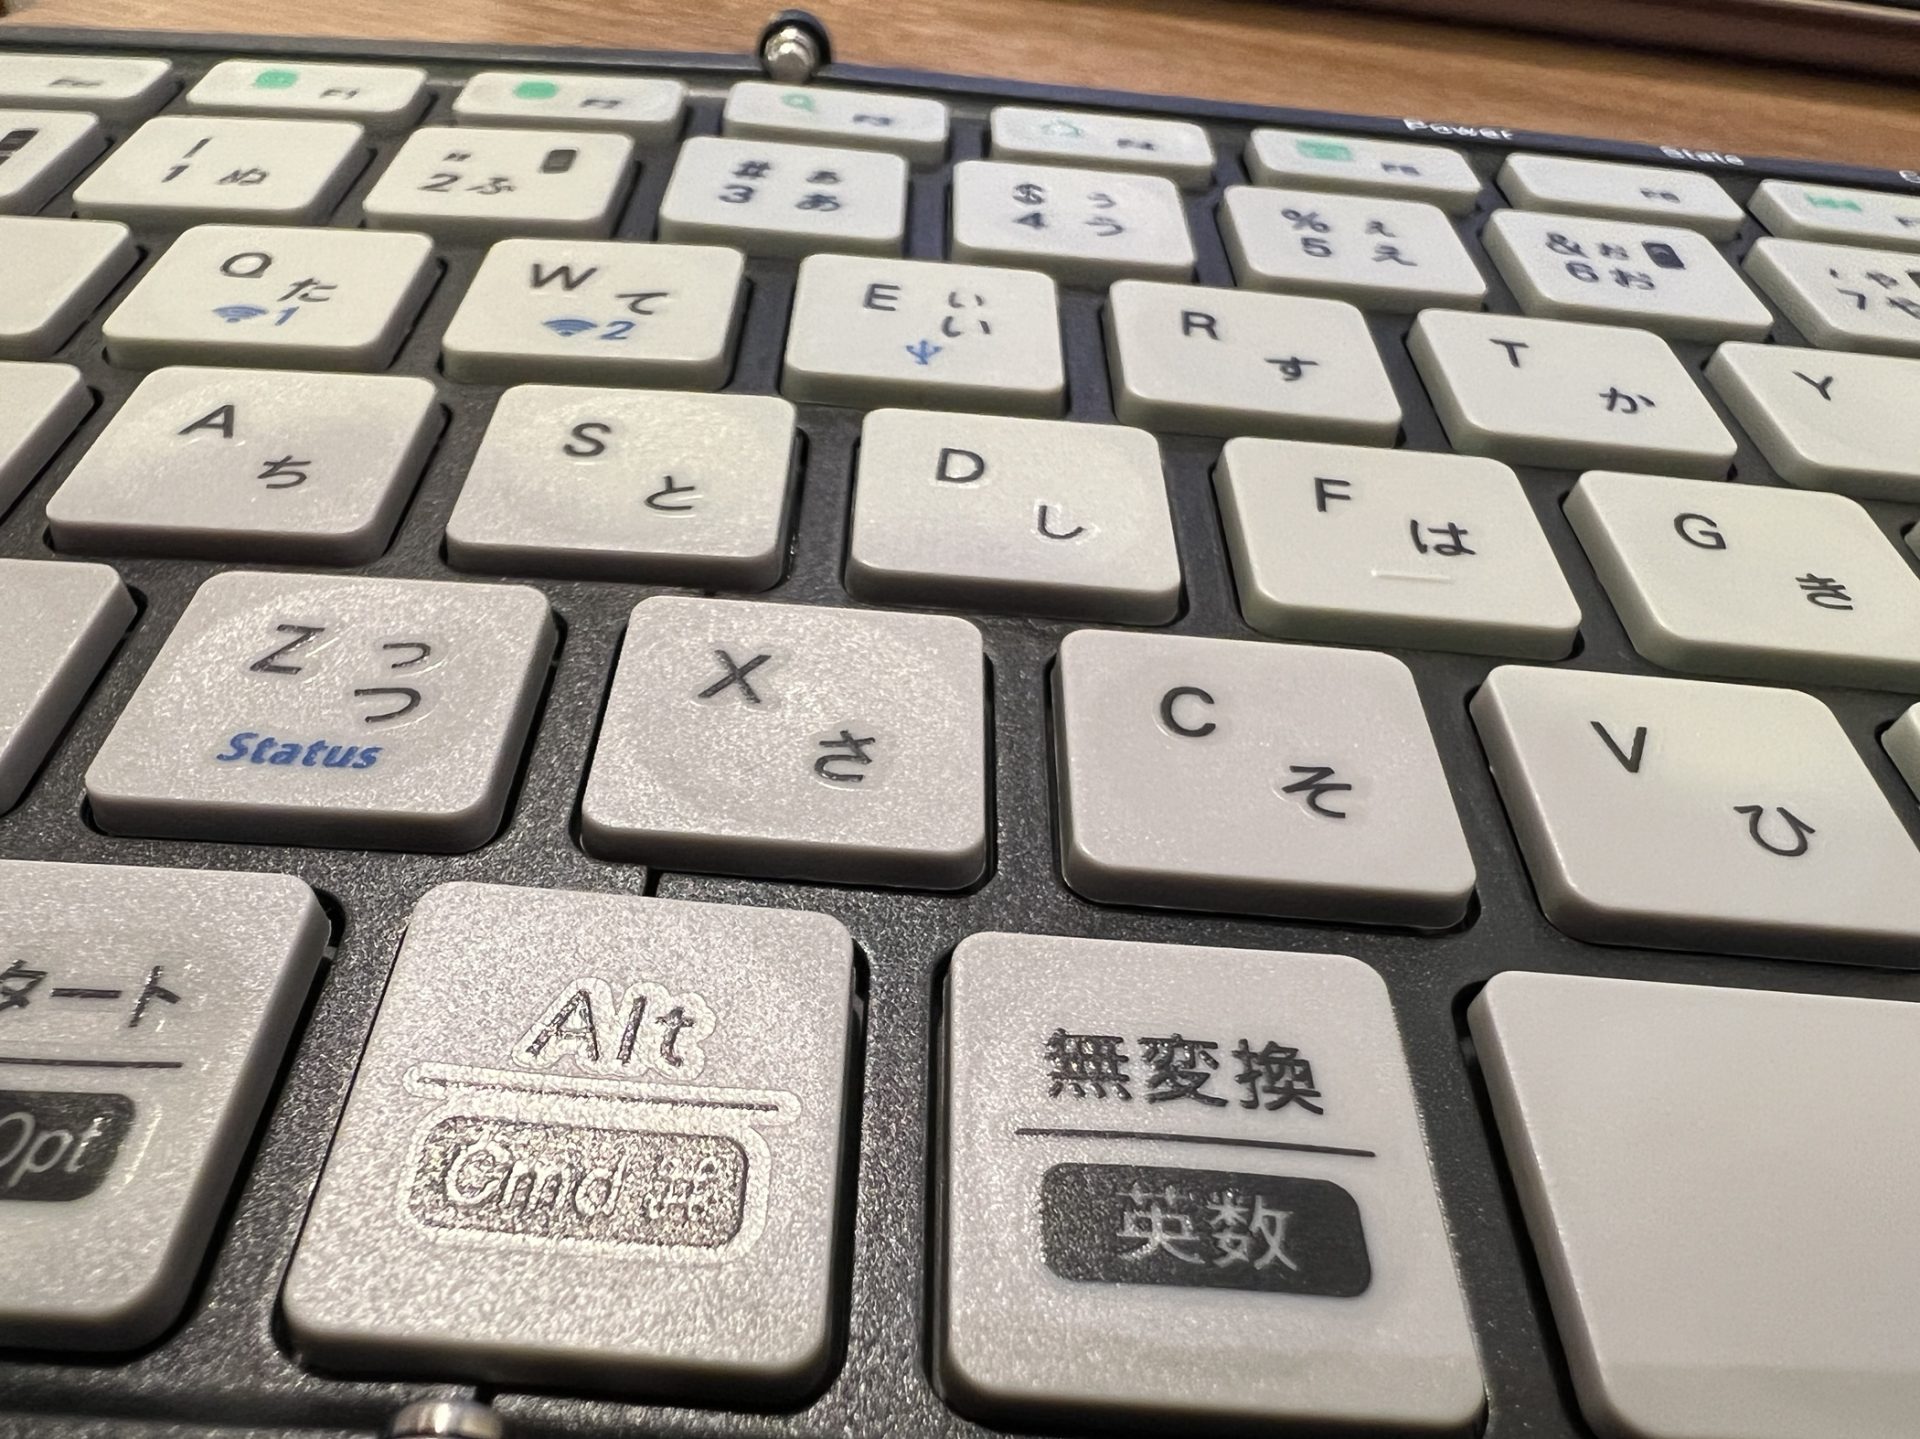 【MOBO Keyboard 2 レビュー】モバイルキーボードの理想形がここに - しあわせなITせいかつ